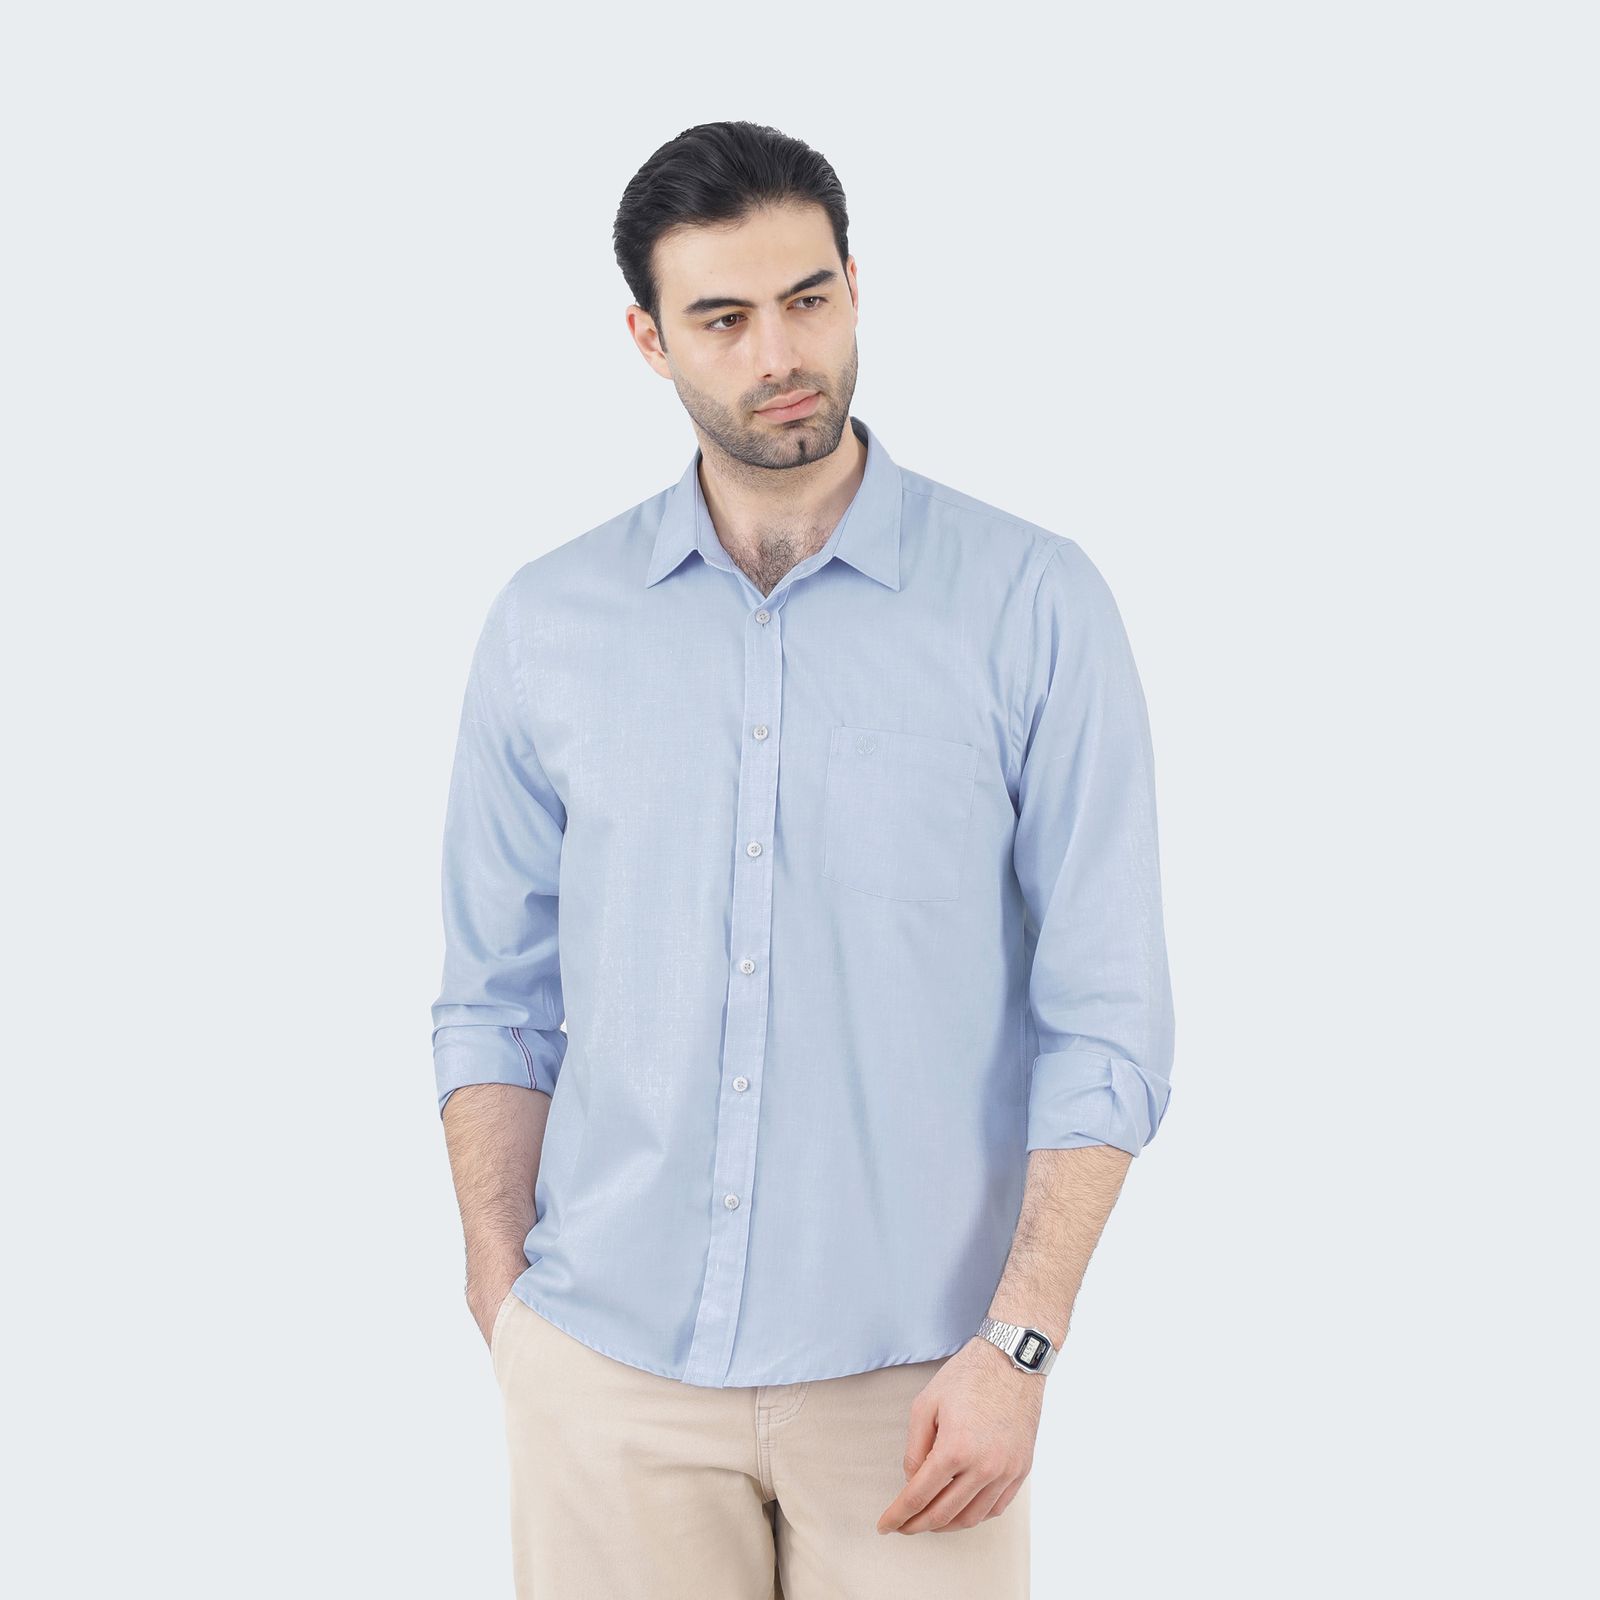 پیراهن آستین بلند مردانه پاتن جامه مدل تترون 102821020289306 رنگ آبی -  - 1